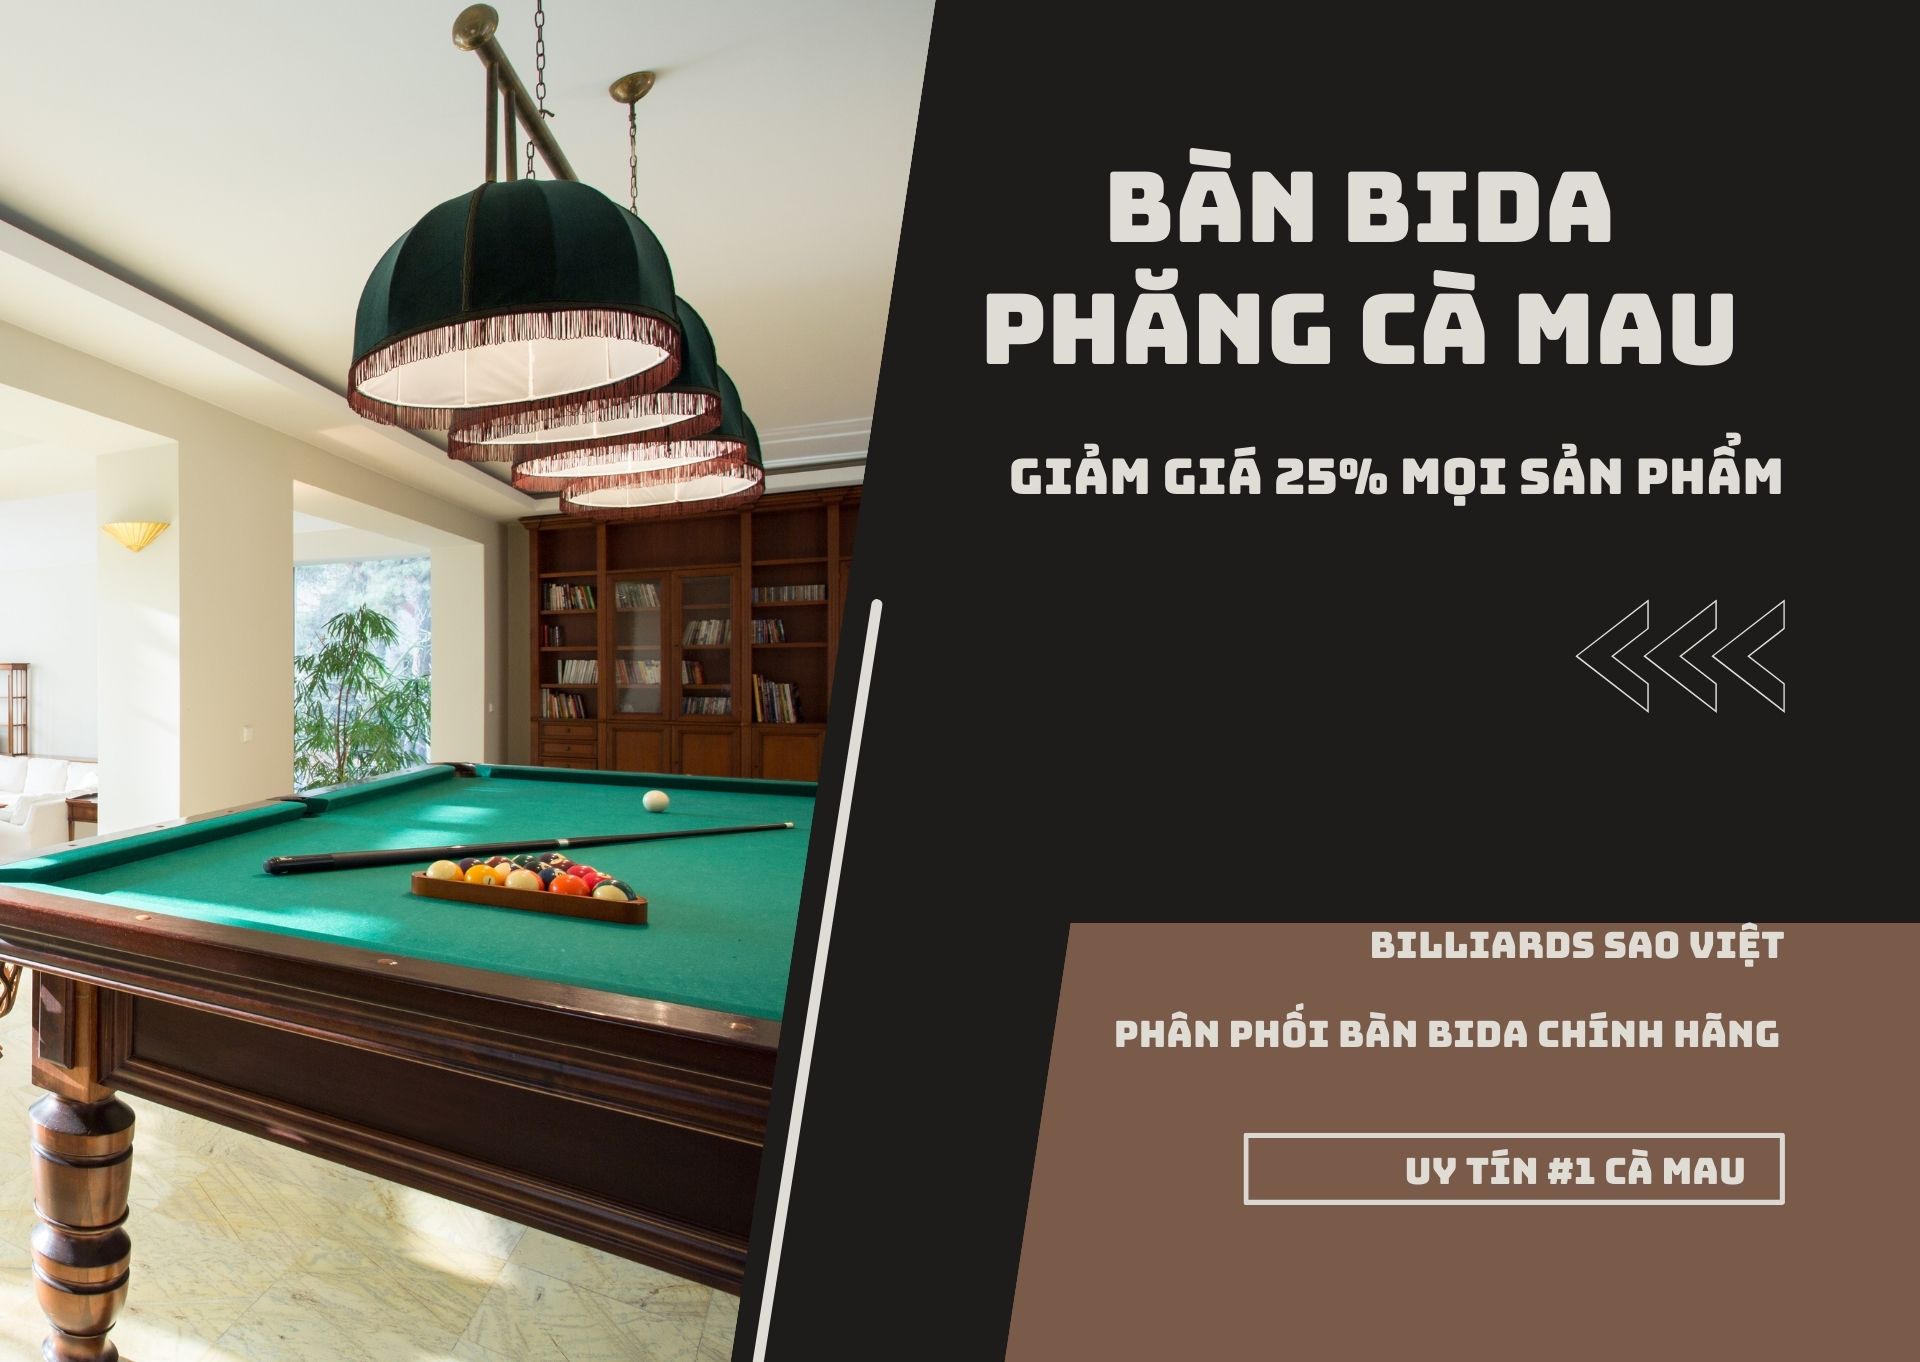 Xưởng sản xuất bàn bida phăng Cà Mau uy tín - Billiards Sao Việt